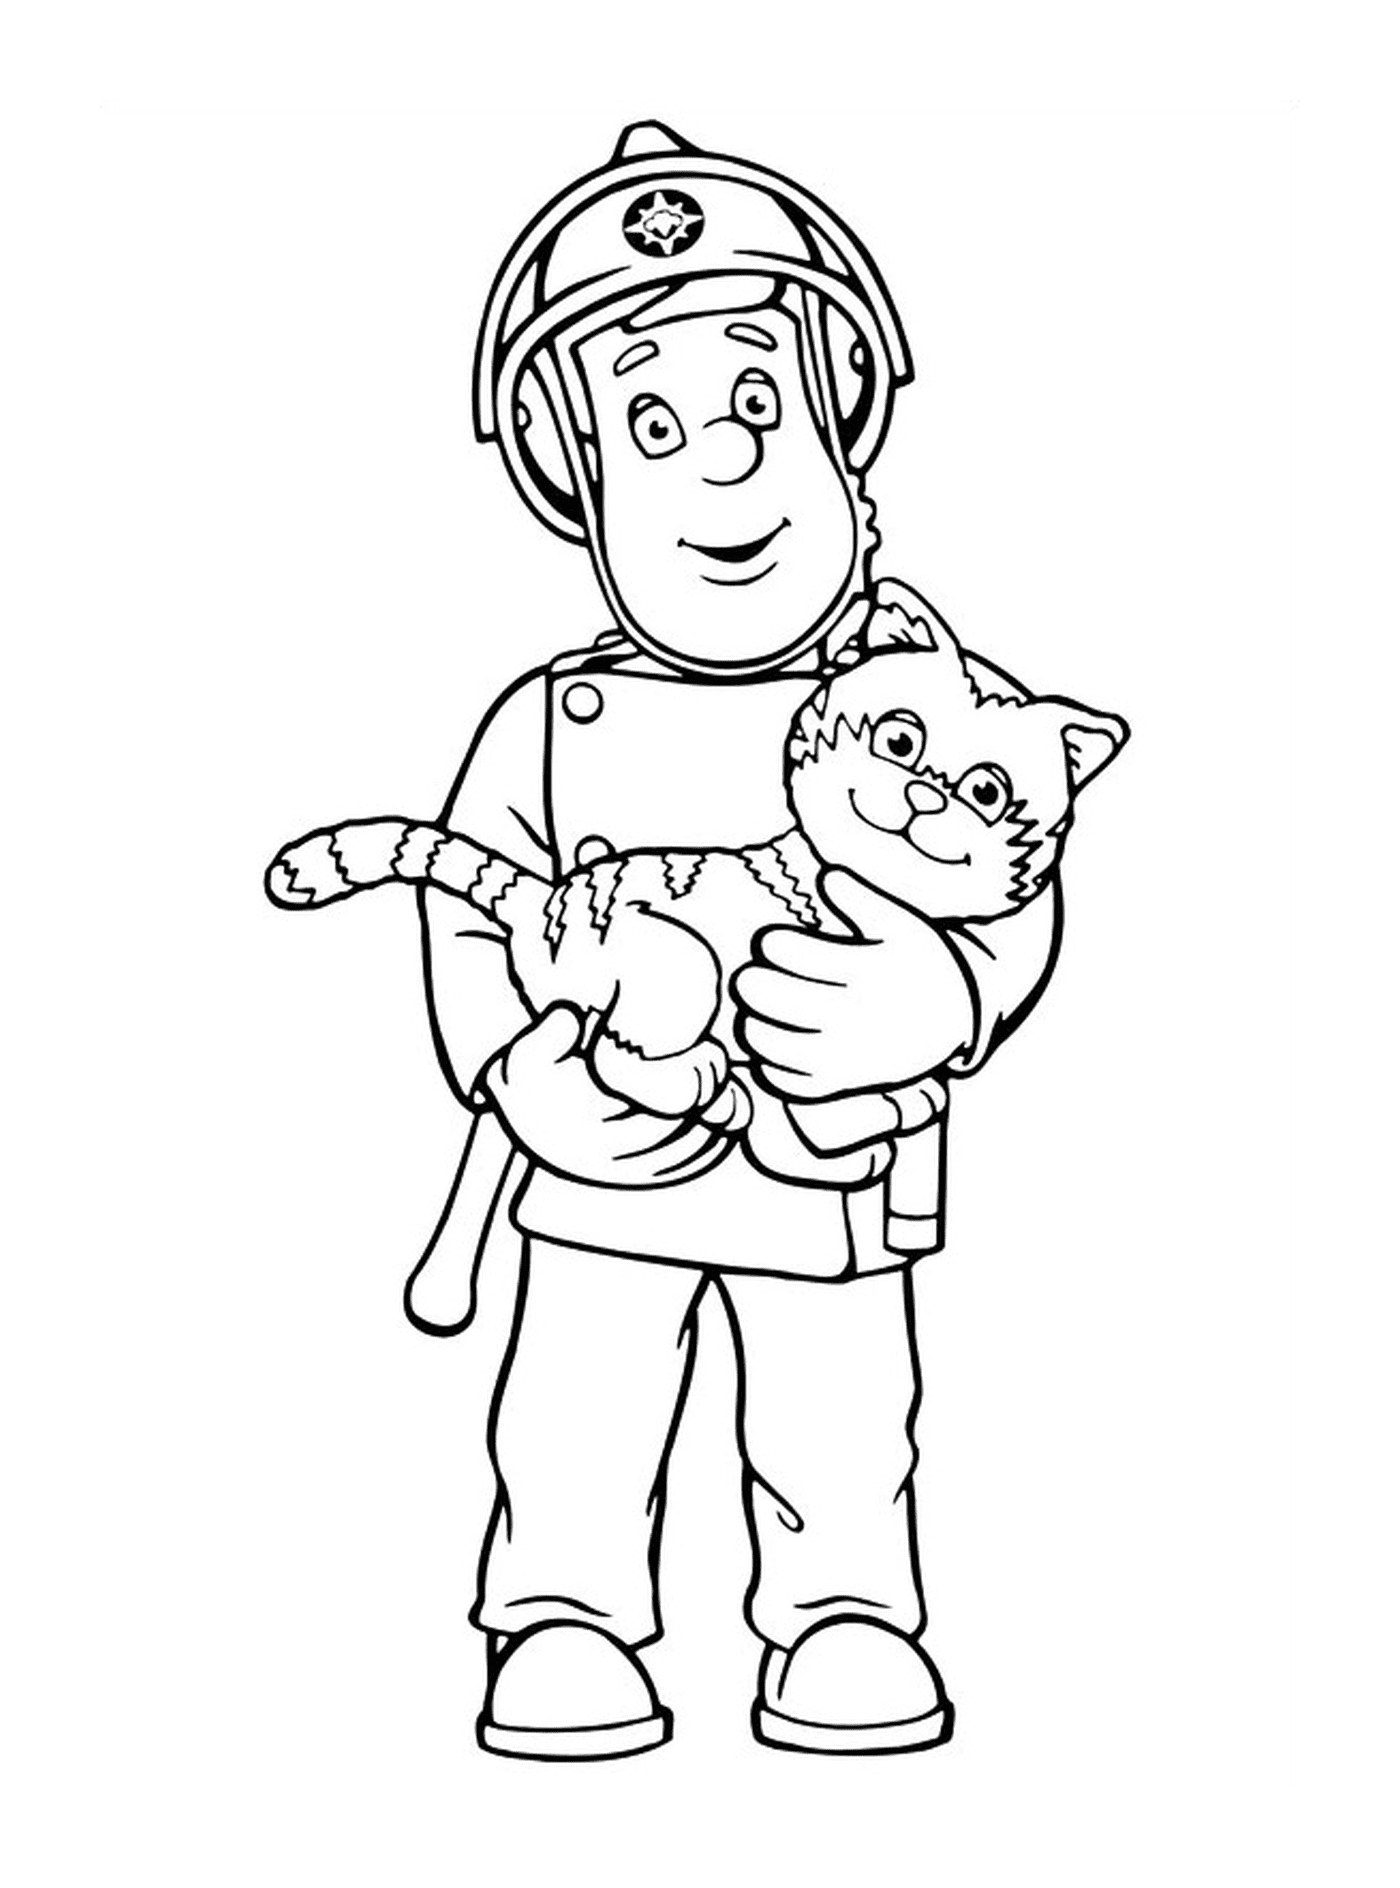  Hombre sosteniendo un gato en sus brazos 